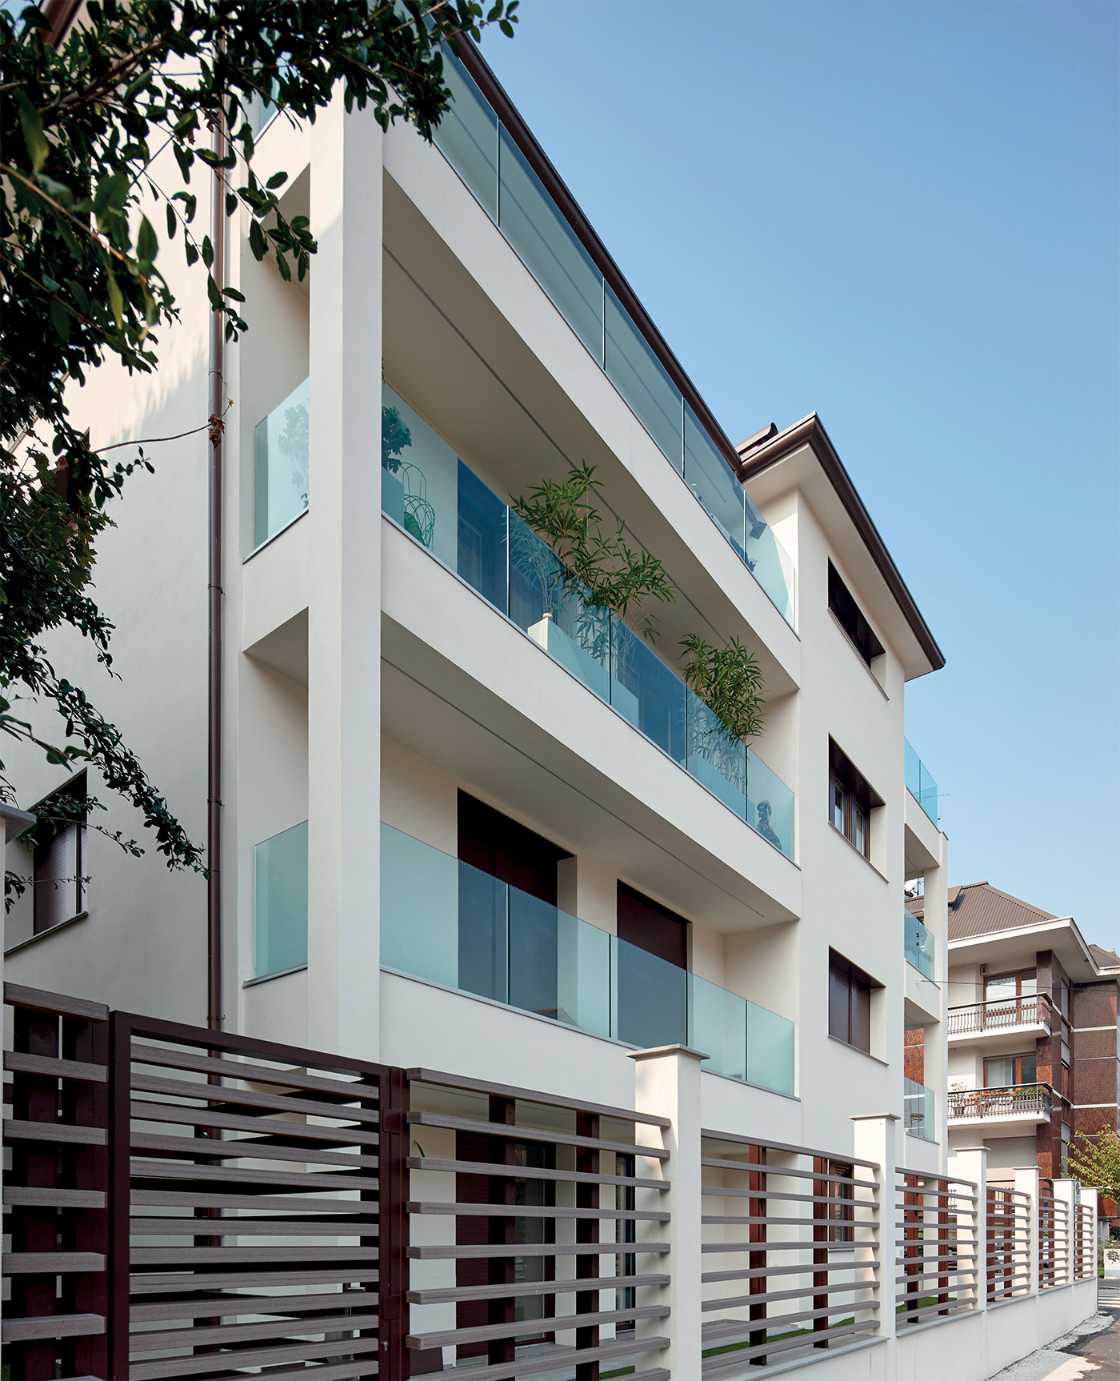 Garda FS Aluvetro glass balustrade building facade